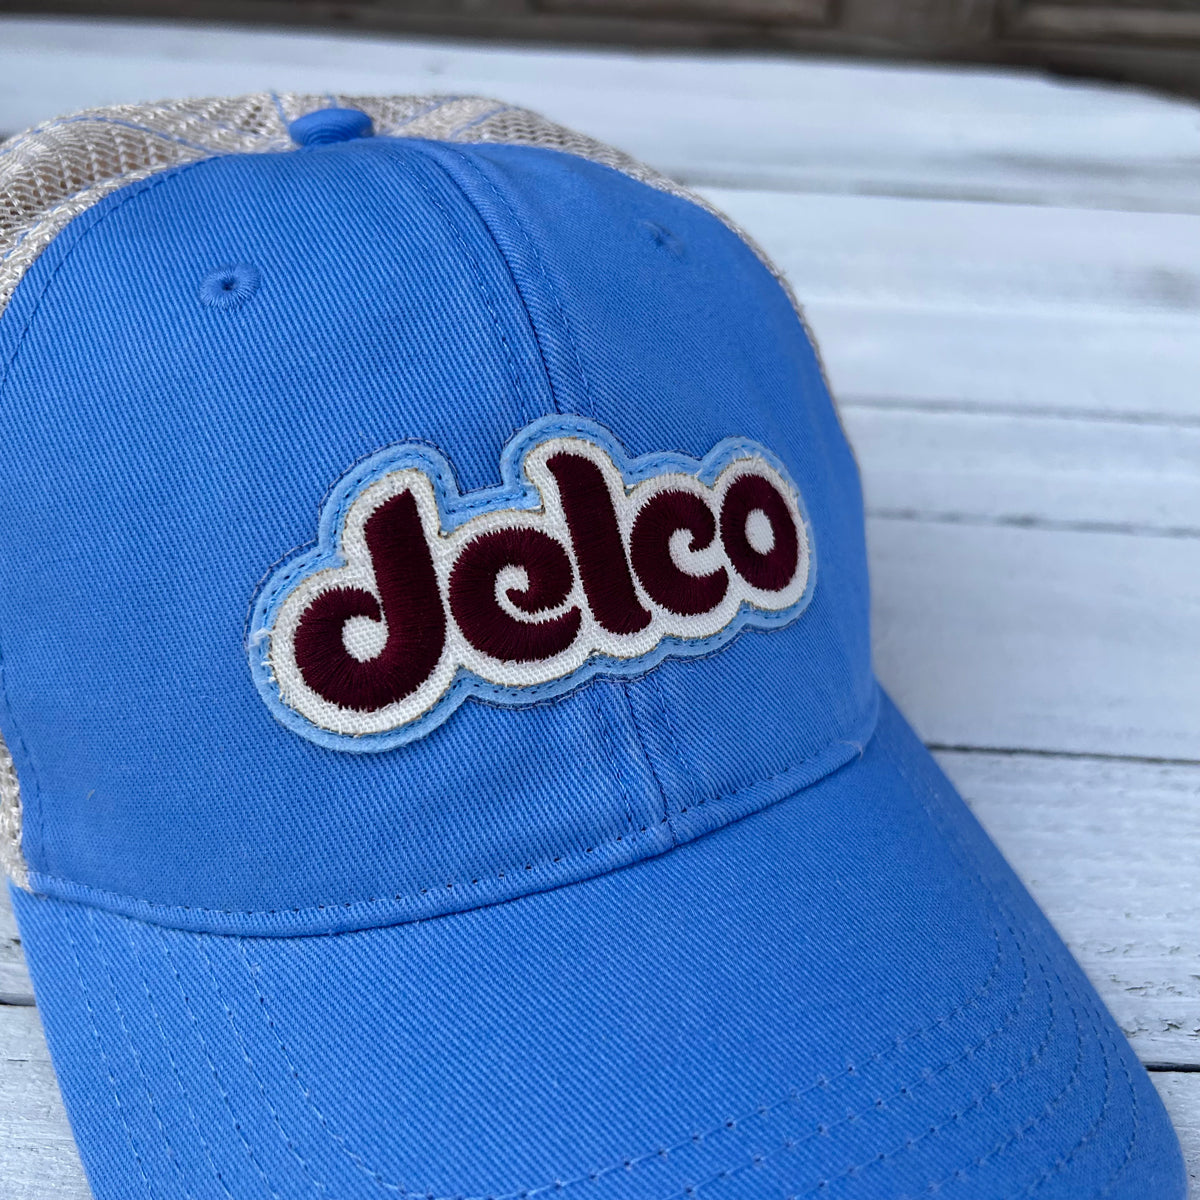 Hat DELCO Fightins